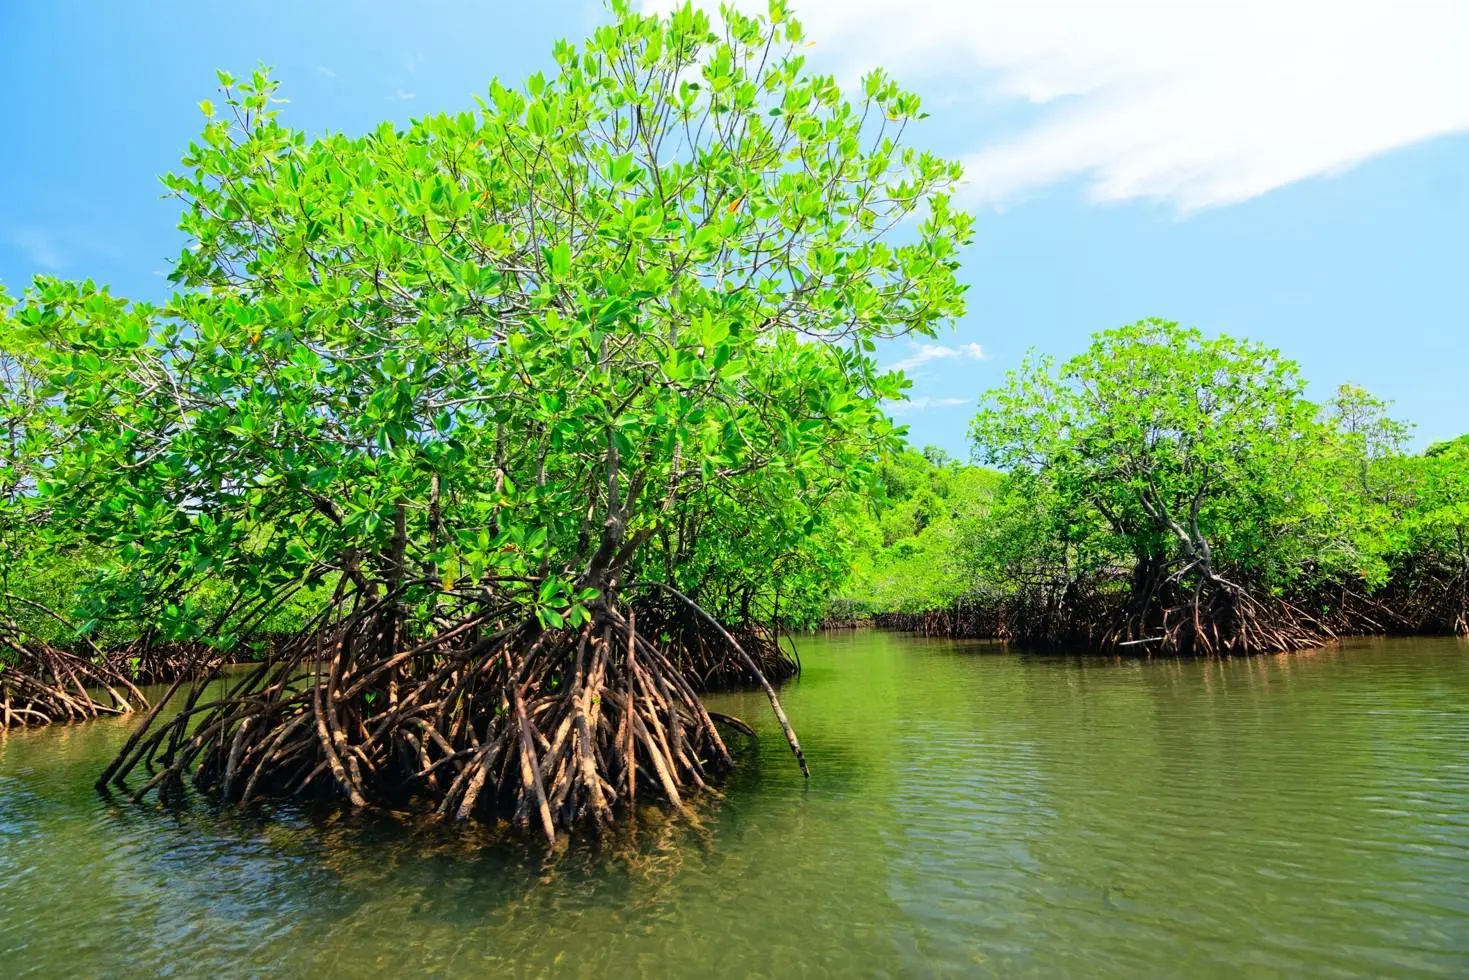 flora y fauna de manglares en mexico - Qué tipos de mangle hay en México